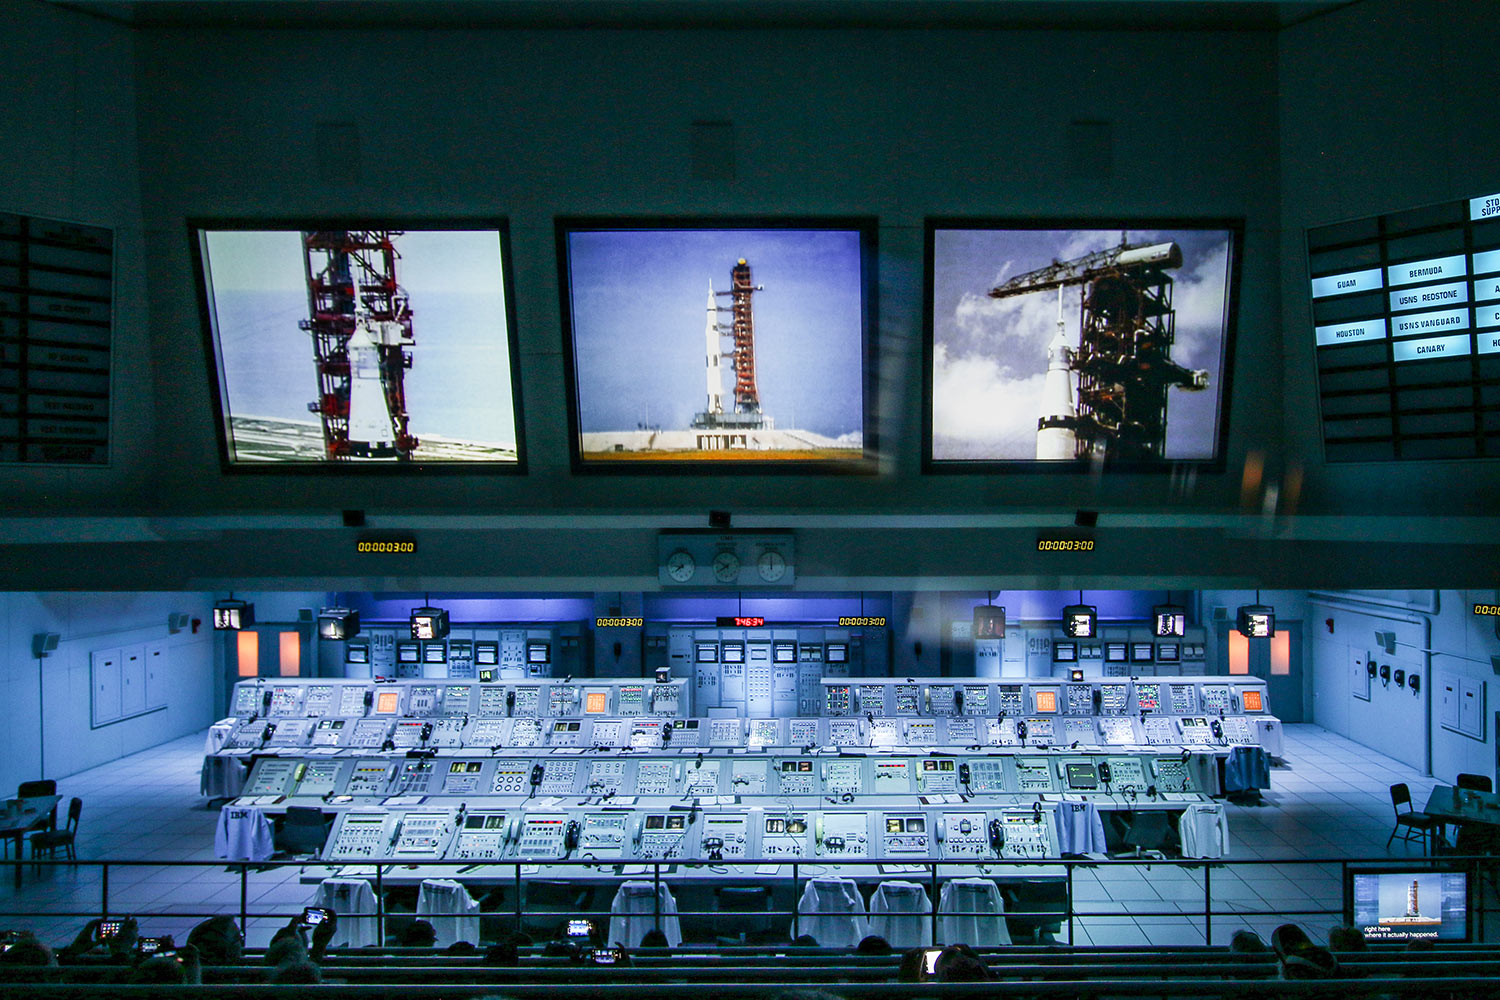 Centre de contrôle Apollo, Space Kennedy Center, Orlando, Floride, États-Unis / Apollo control center, NASA, Kennedy Space Center, Florida, USA